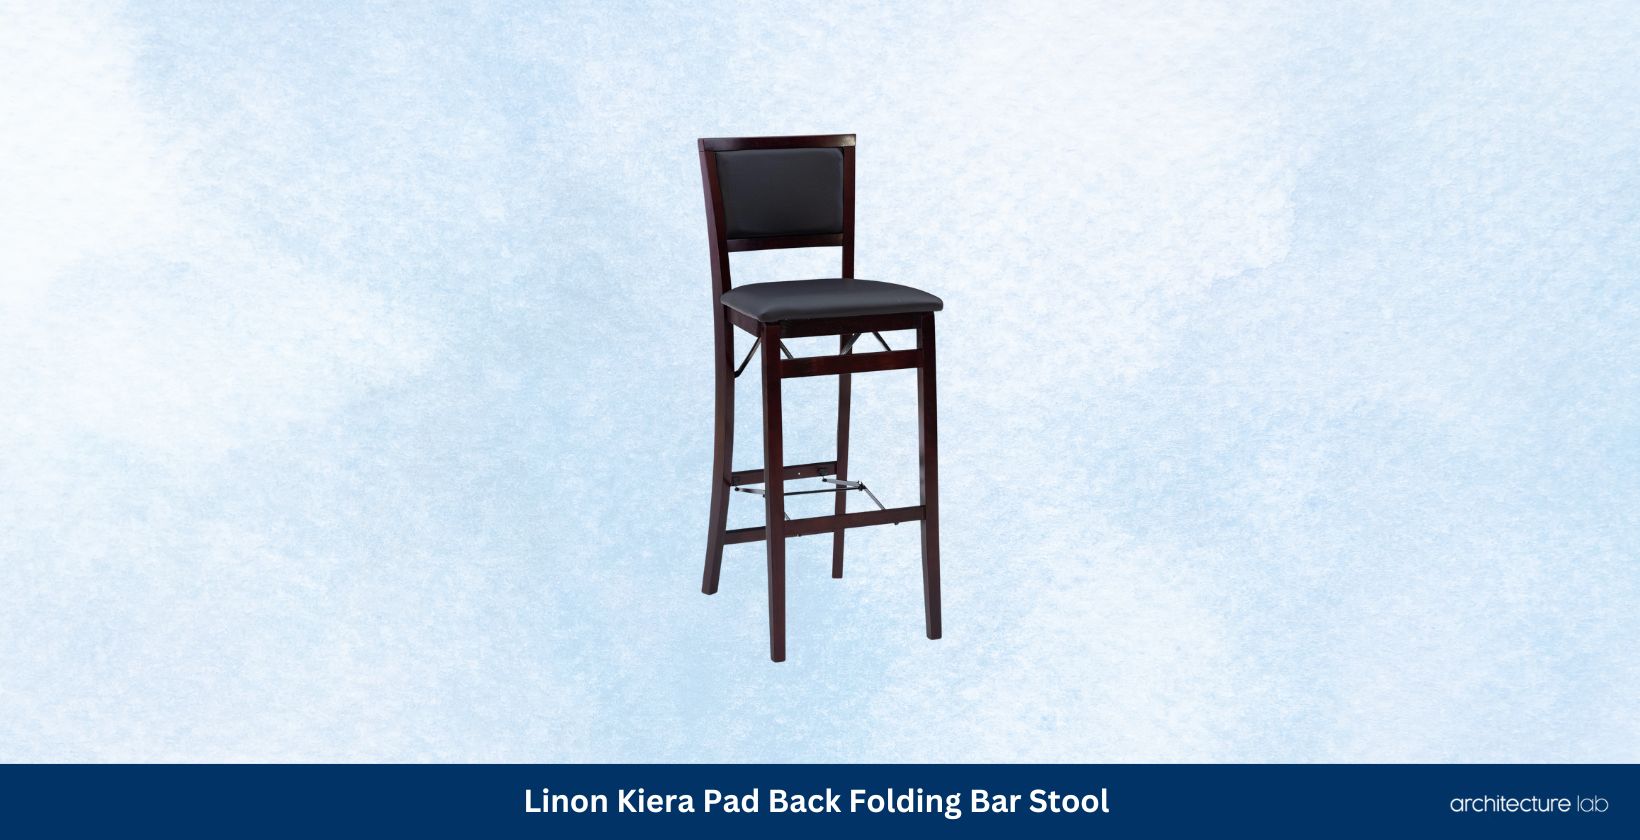 Linon kiera pad back folding bar stool